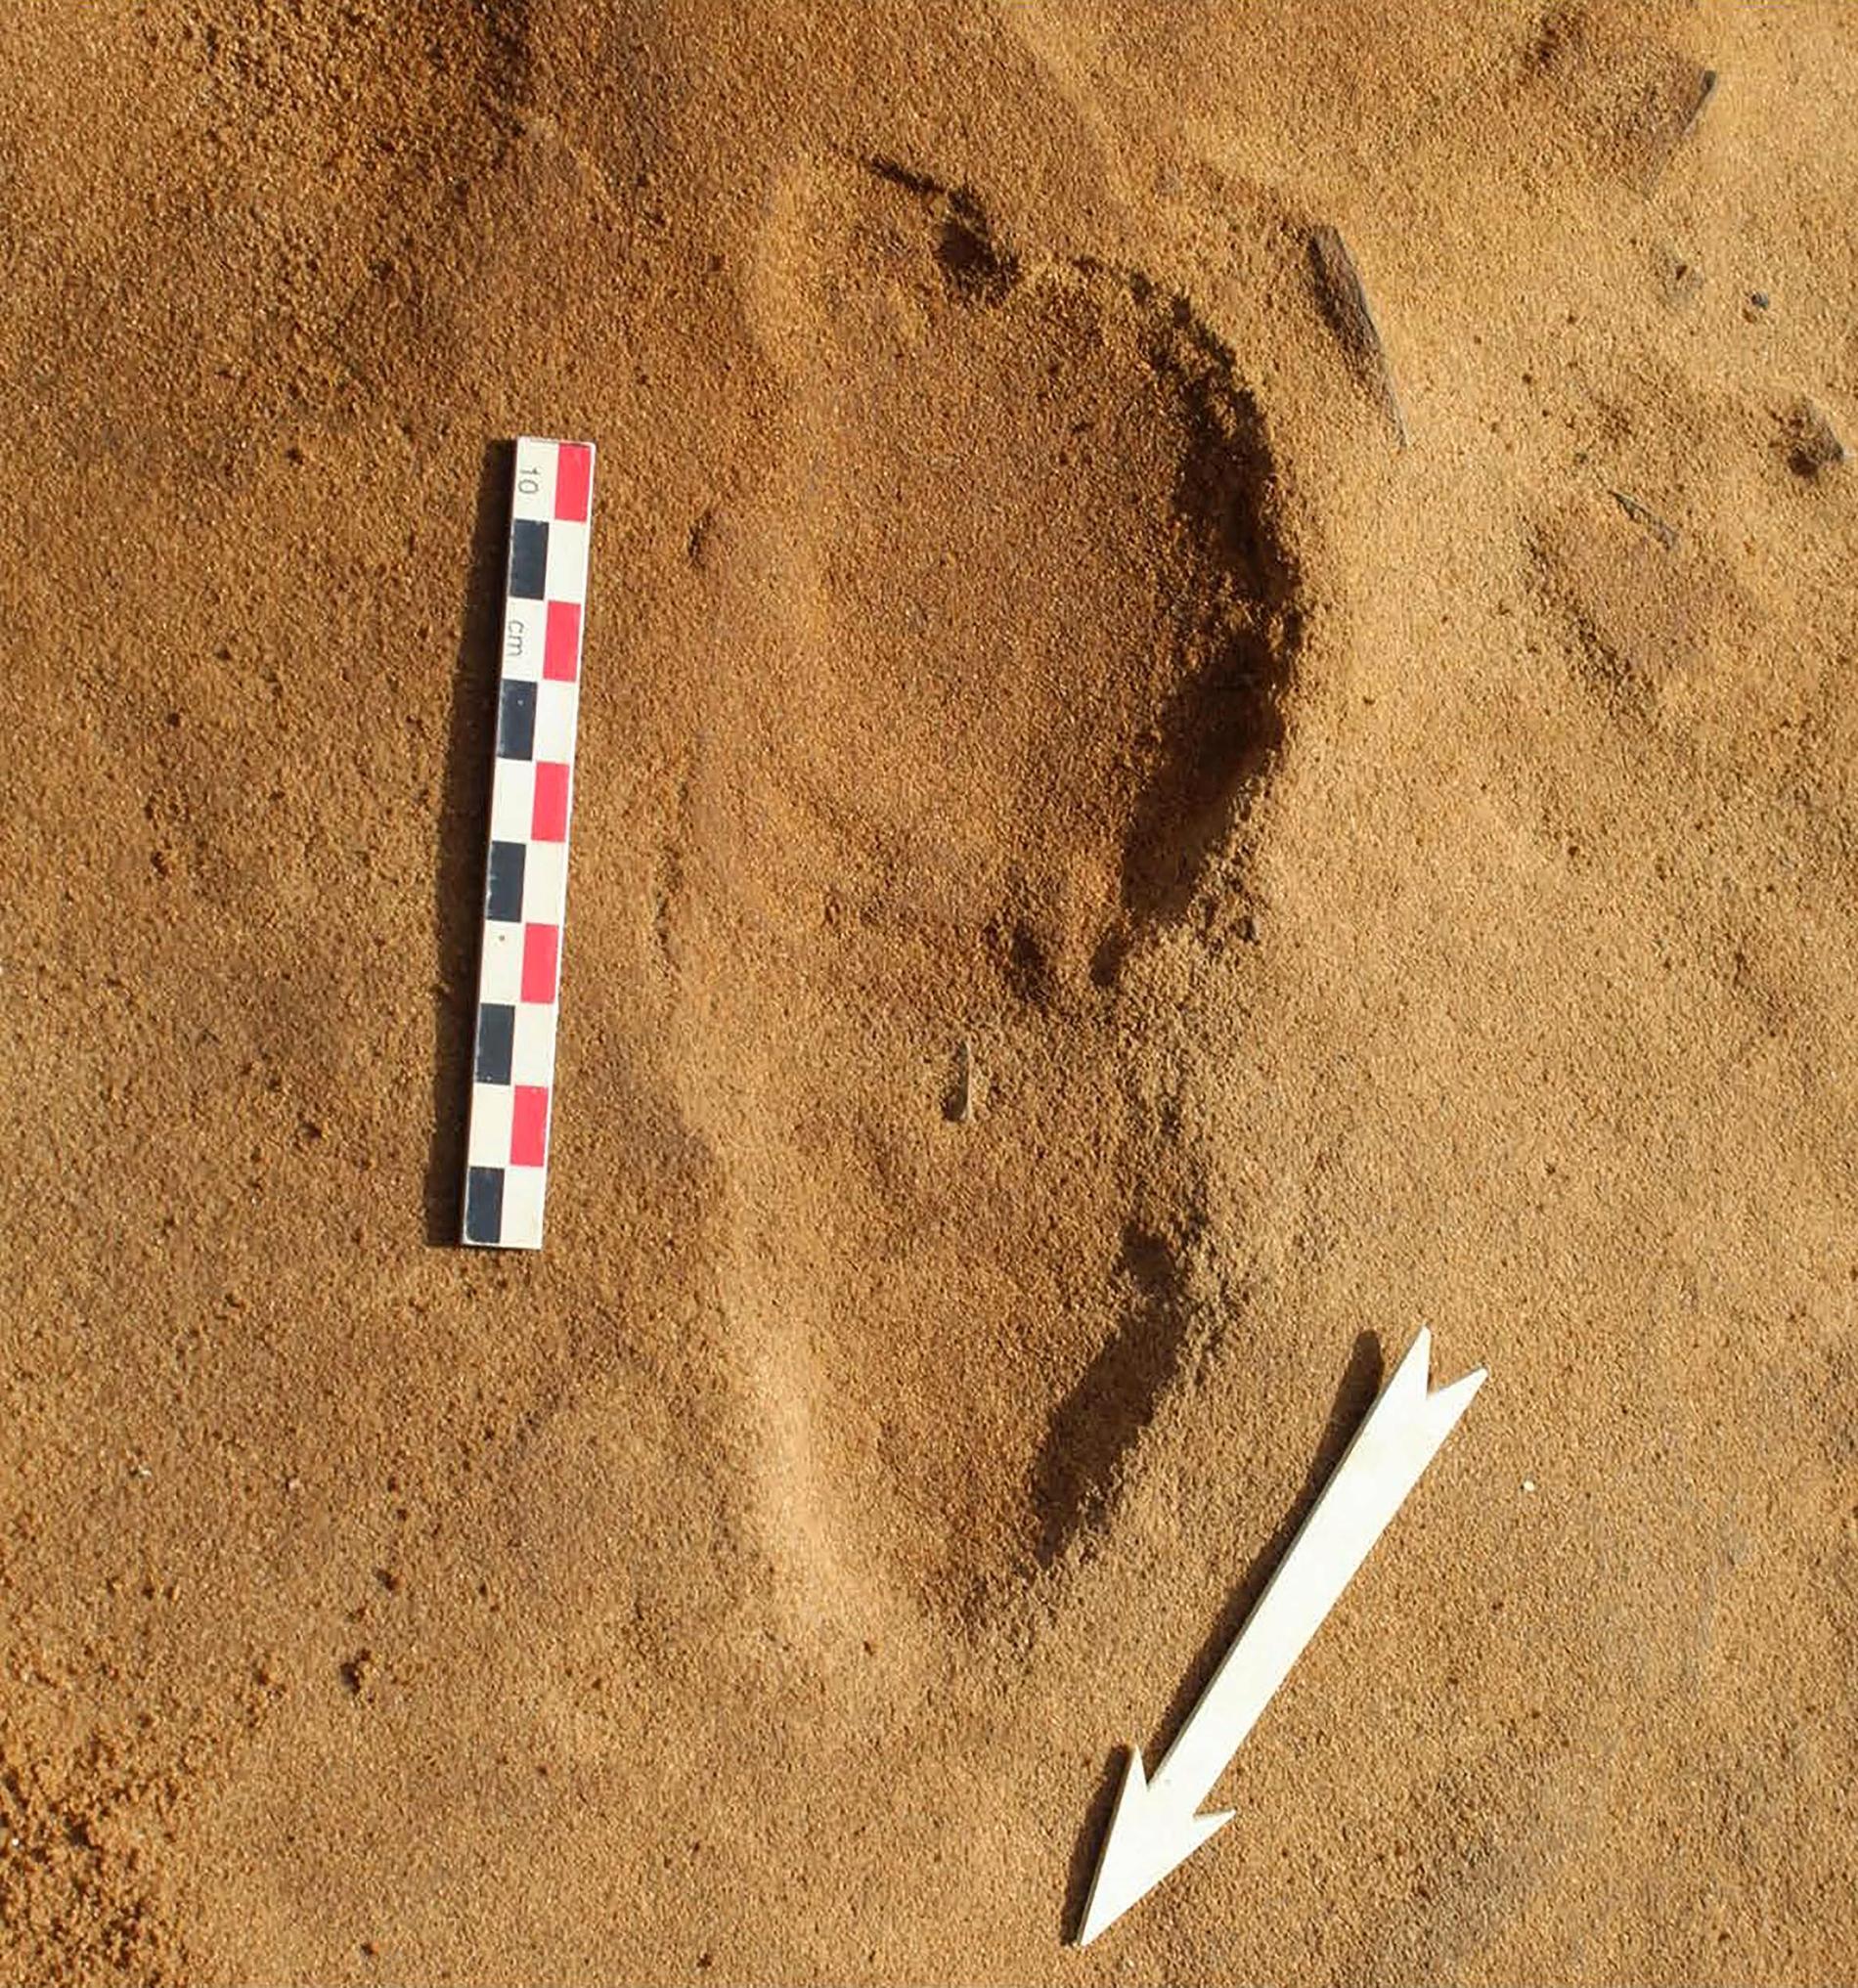 I 80 000 år har detta fotavtryck från en neandertalare, som var mer bredfotad än vi, bevarats i sanden i Normandie där det nu har upptäckts tillsammans med 256 andra avtryck.